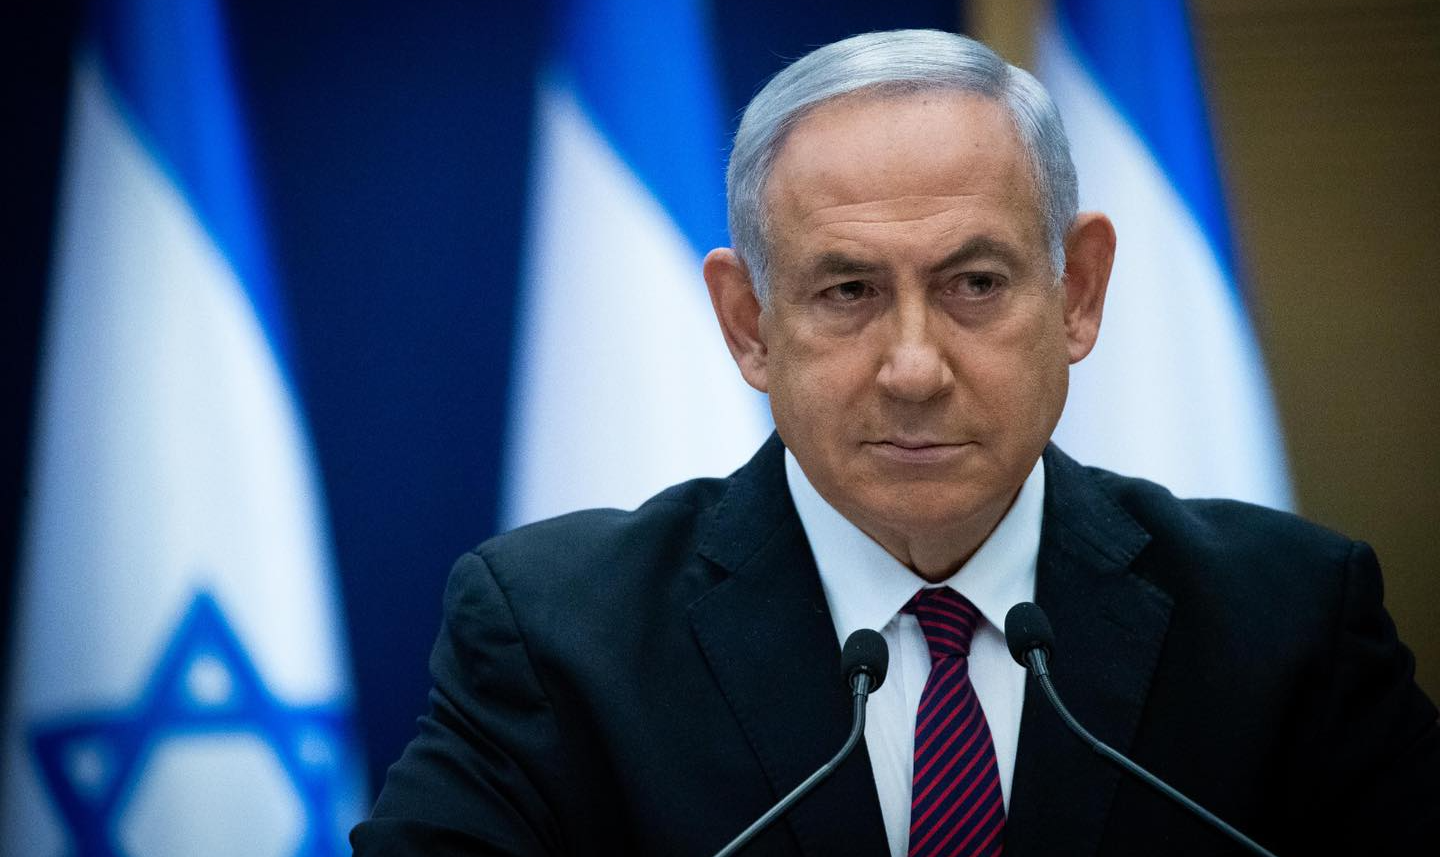 Coalizão liderada por Bennett e Lapid encerrou 12 anos de Bibi no comando do país; nova gestão 'continuará a mesma política', denuncia Hadash